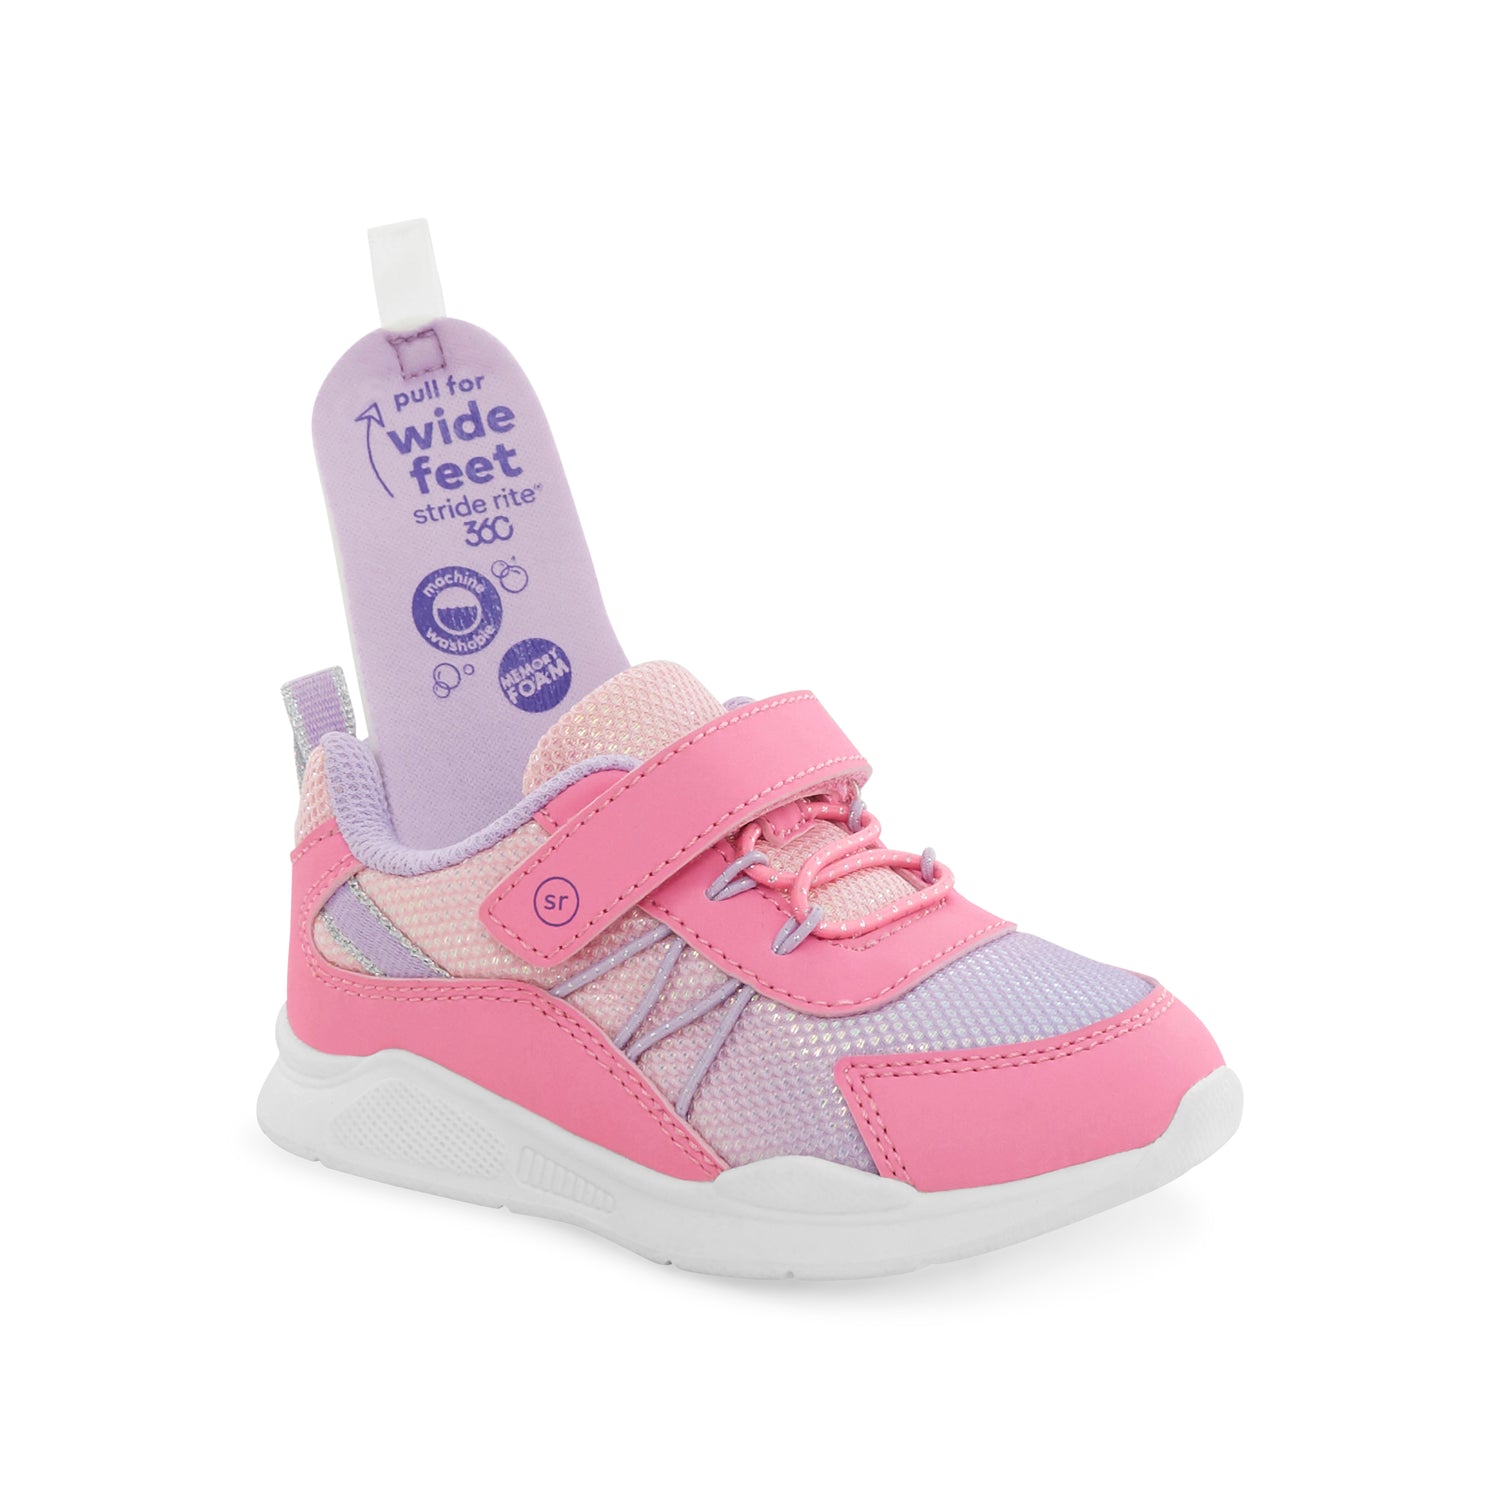 Dive Sneaker 2.0 Navy/Pink